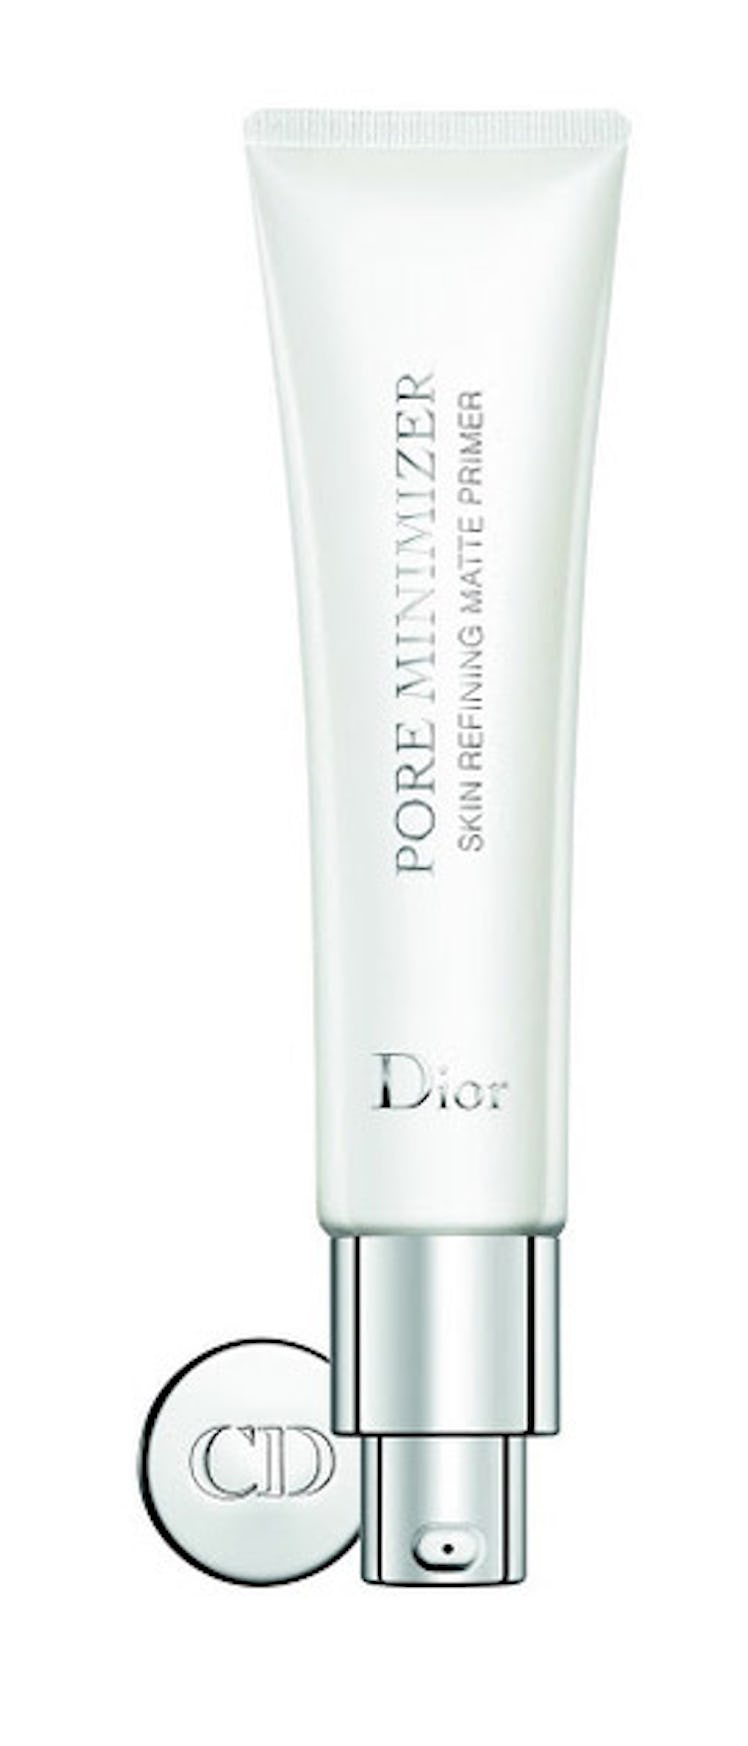 __Dior Pore Minimizer__ ($42, [dior .com](http://www.dior.com/beauty/en_us/makeup/look-exclusives/co...